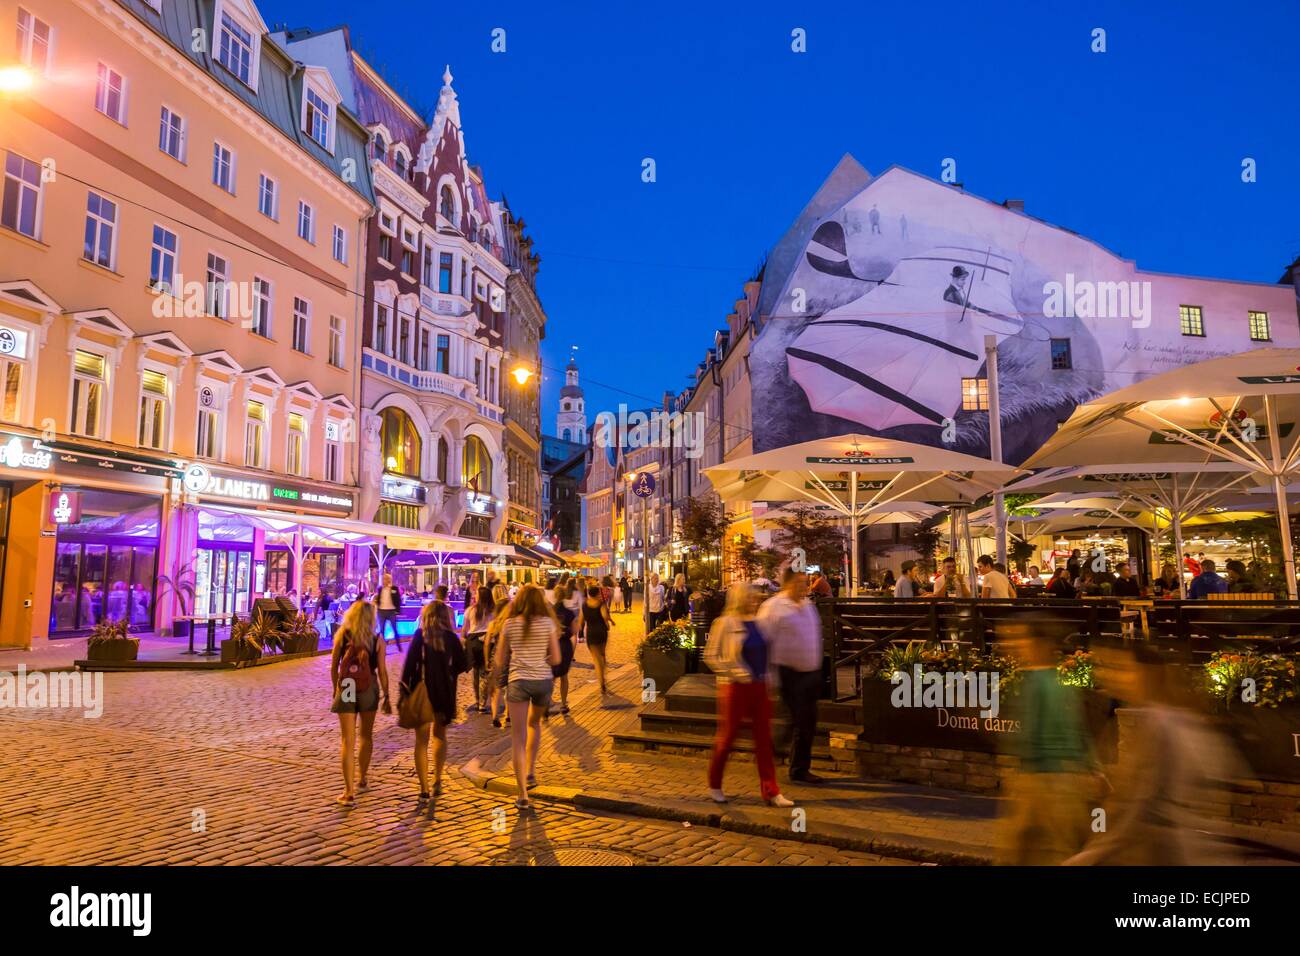 La lettonia (Paesi Baltici), Riga, capitale europea della cultura 2014, centro storico elencati come patrimonio mondiale dall' UNESCO, terrasses nel centro della città, Tirgonu Street Foto Stock